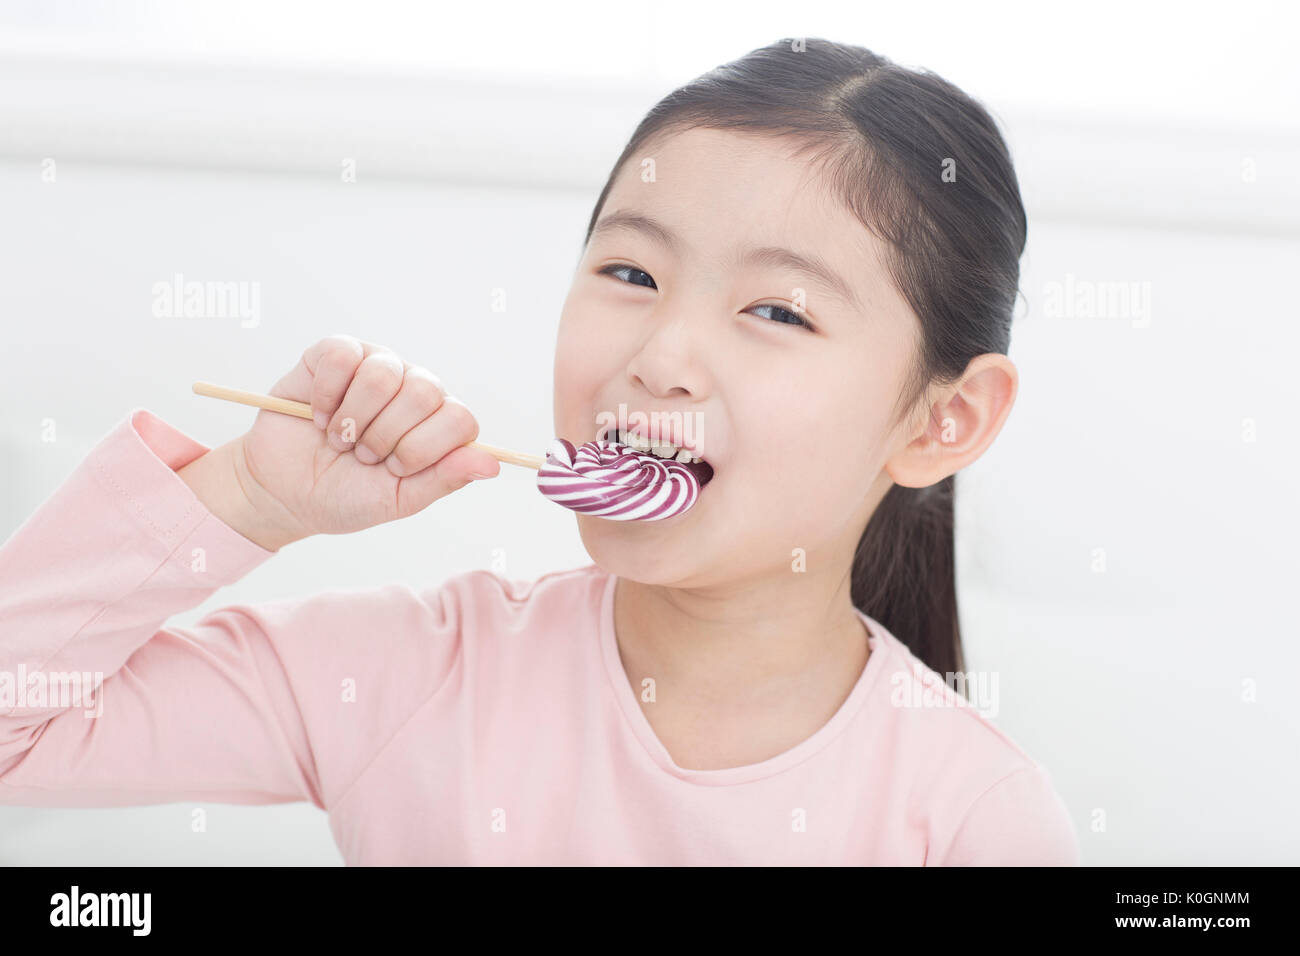 Portrait of smiling girl avec lollipops Banque D'Images